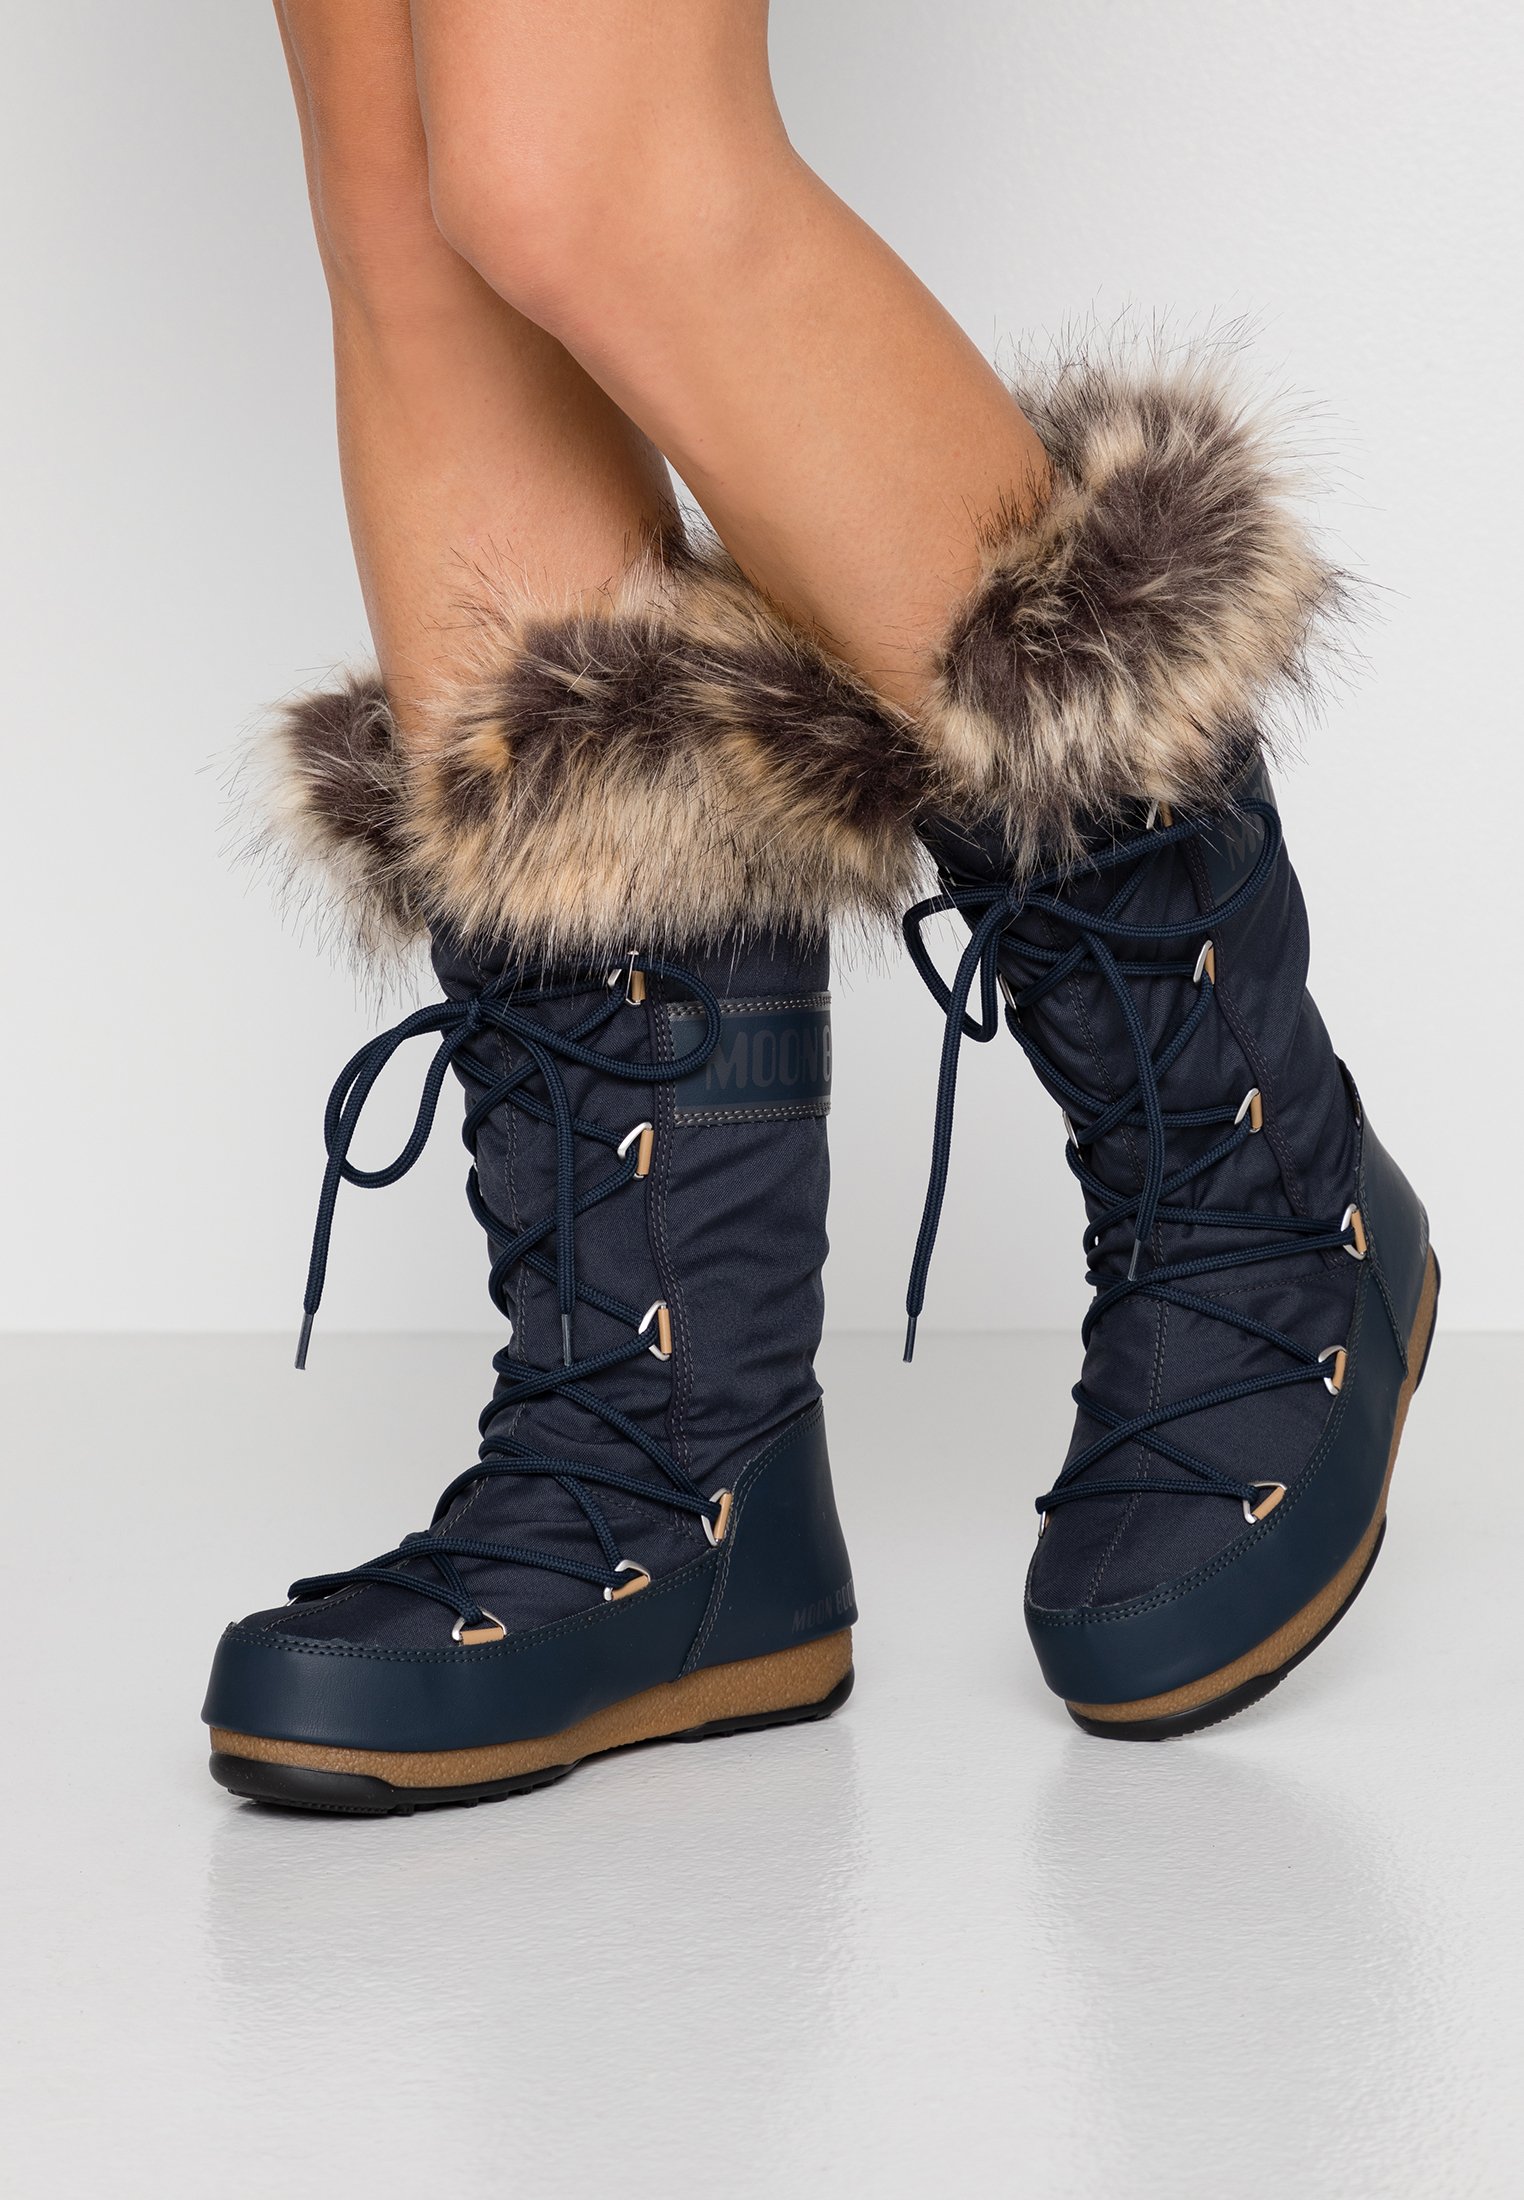 Estas son las mejores botas de nieve baratas que puedes encontrar en las rebajas